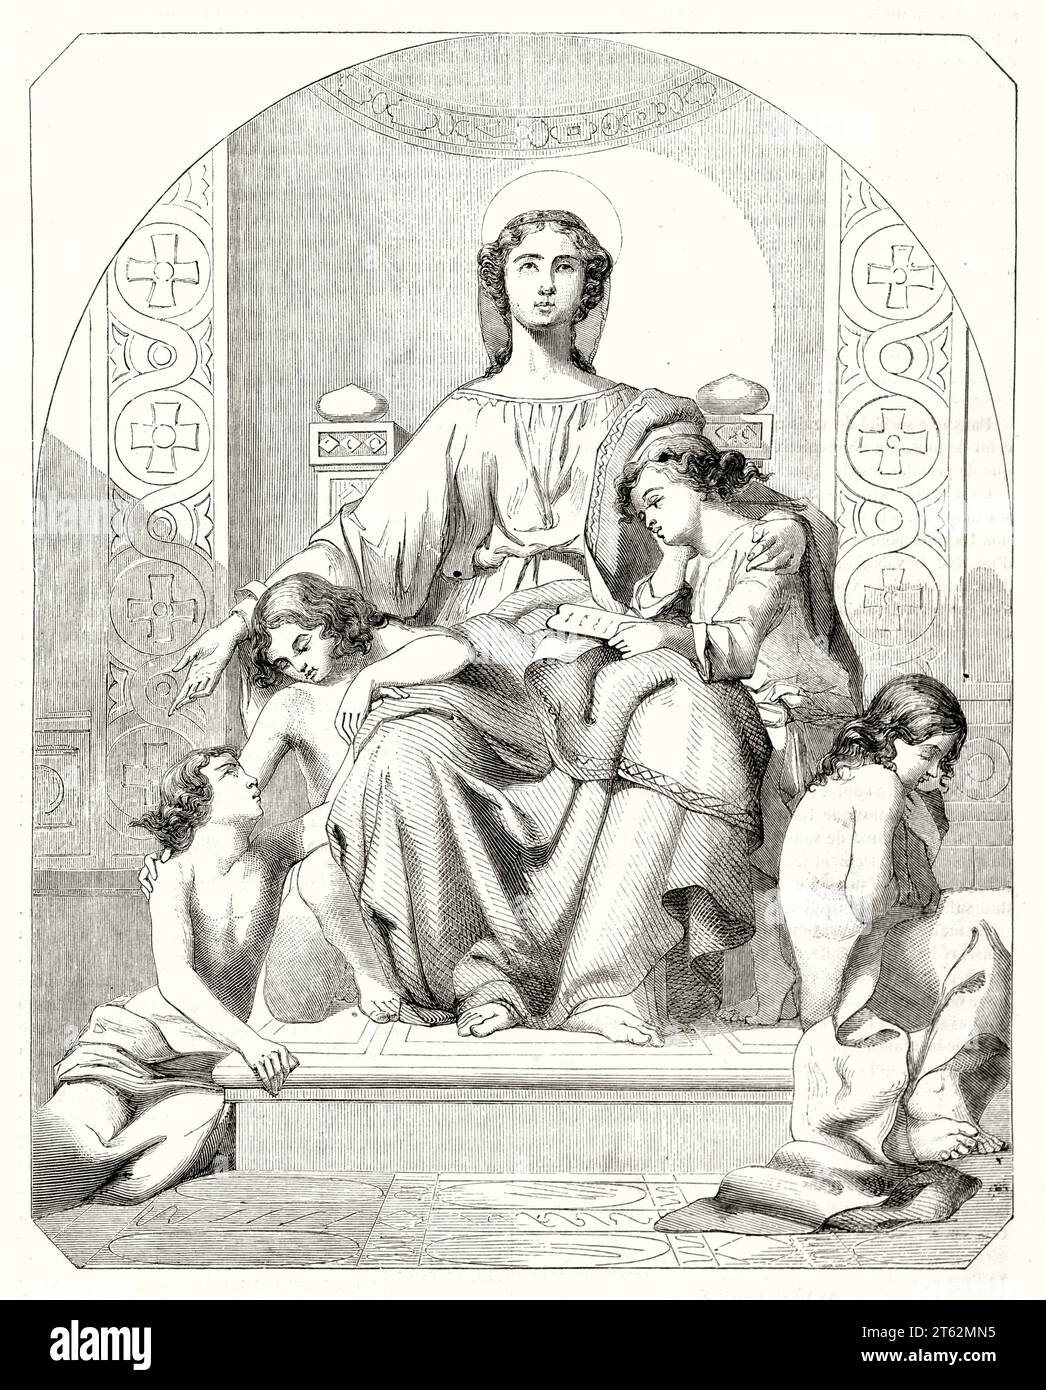 Vieille illustration allégorique de la Charité. D'après Landelle, publ. Sur magasin pittoresque, Paris, 1849 Banque D'Images